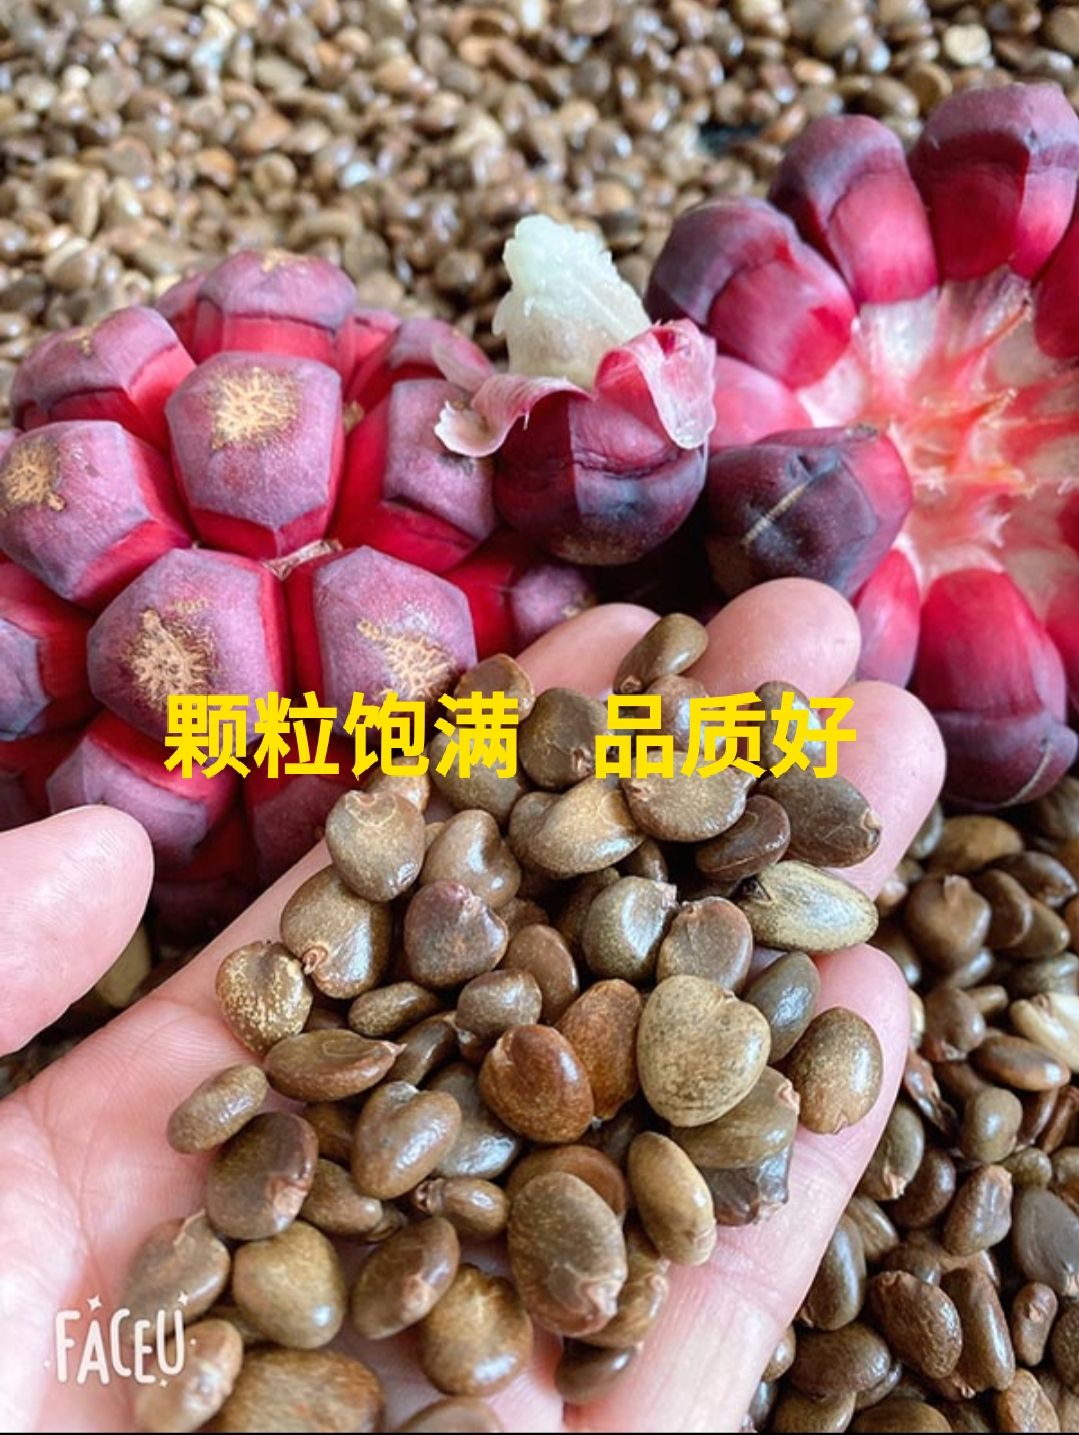 通道侗族自治县黑老虎种子  2022年优质黑老虎 布福娜 种子  颗粒饱满